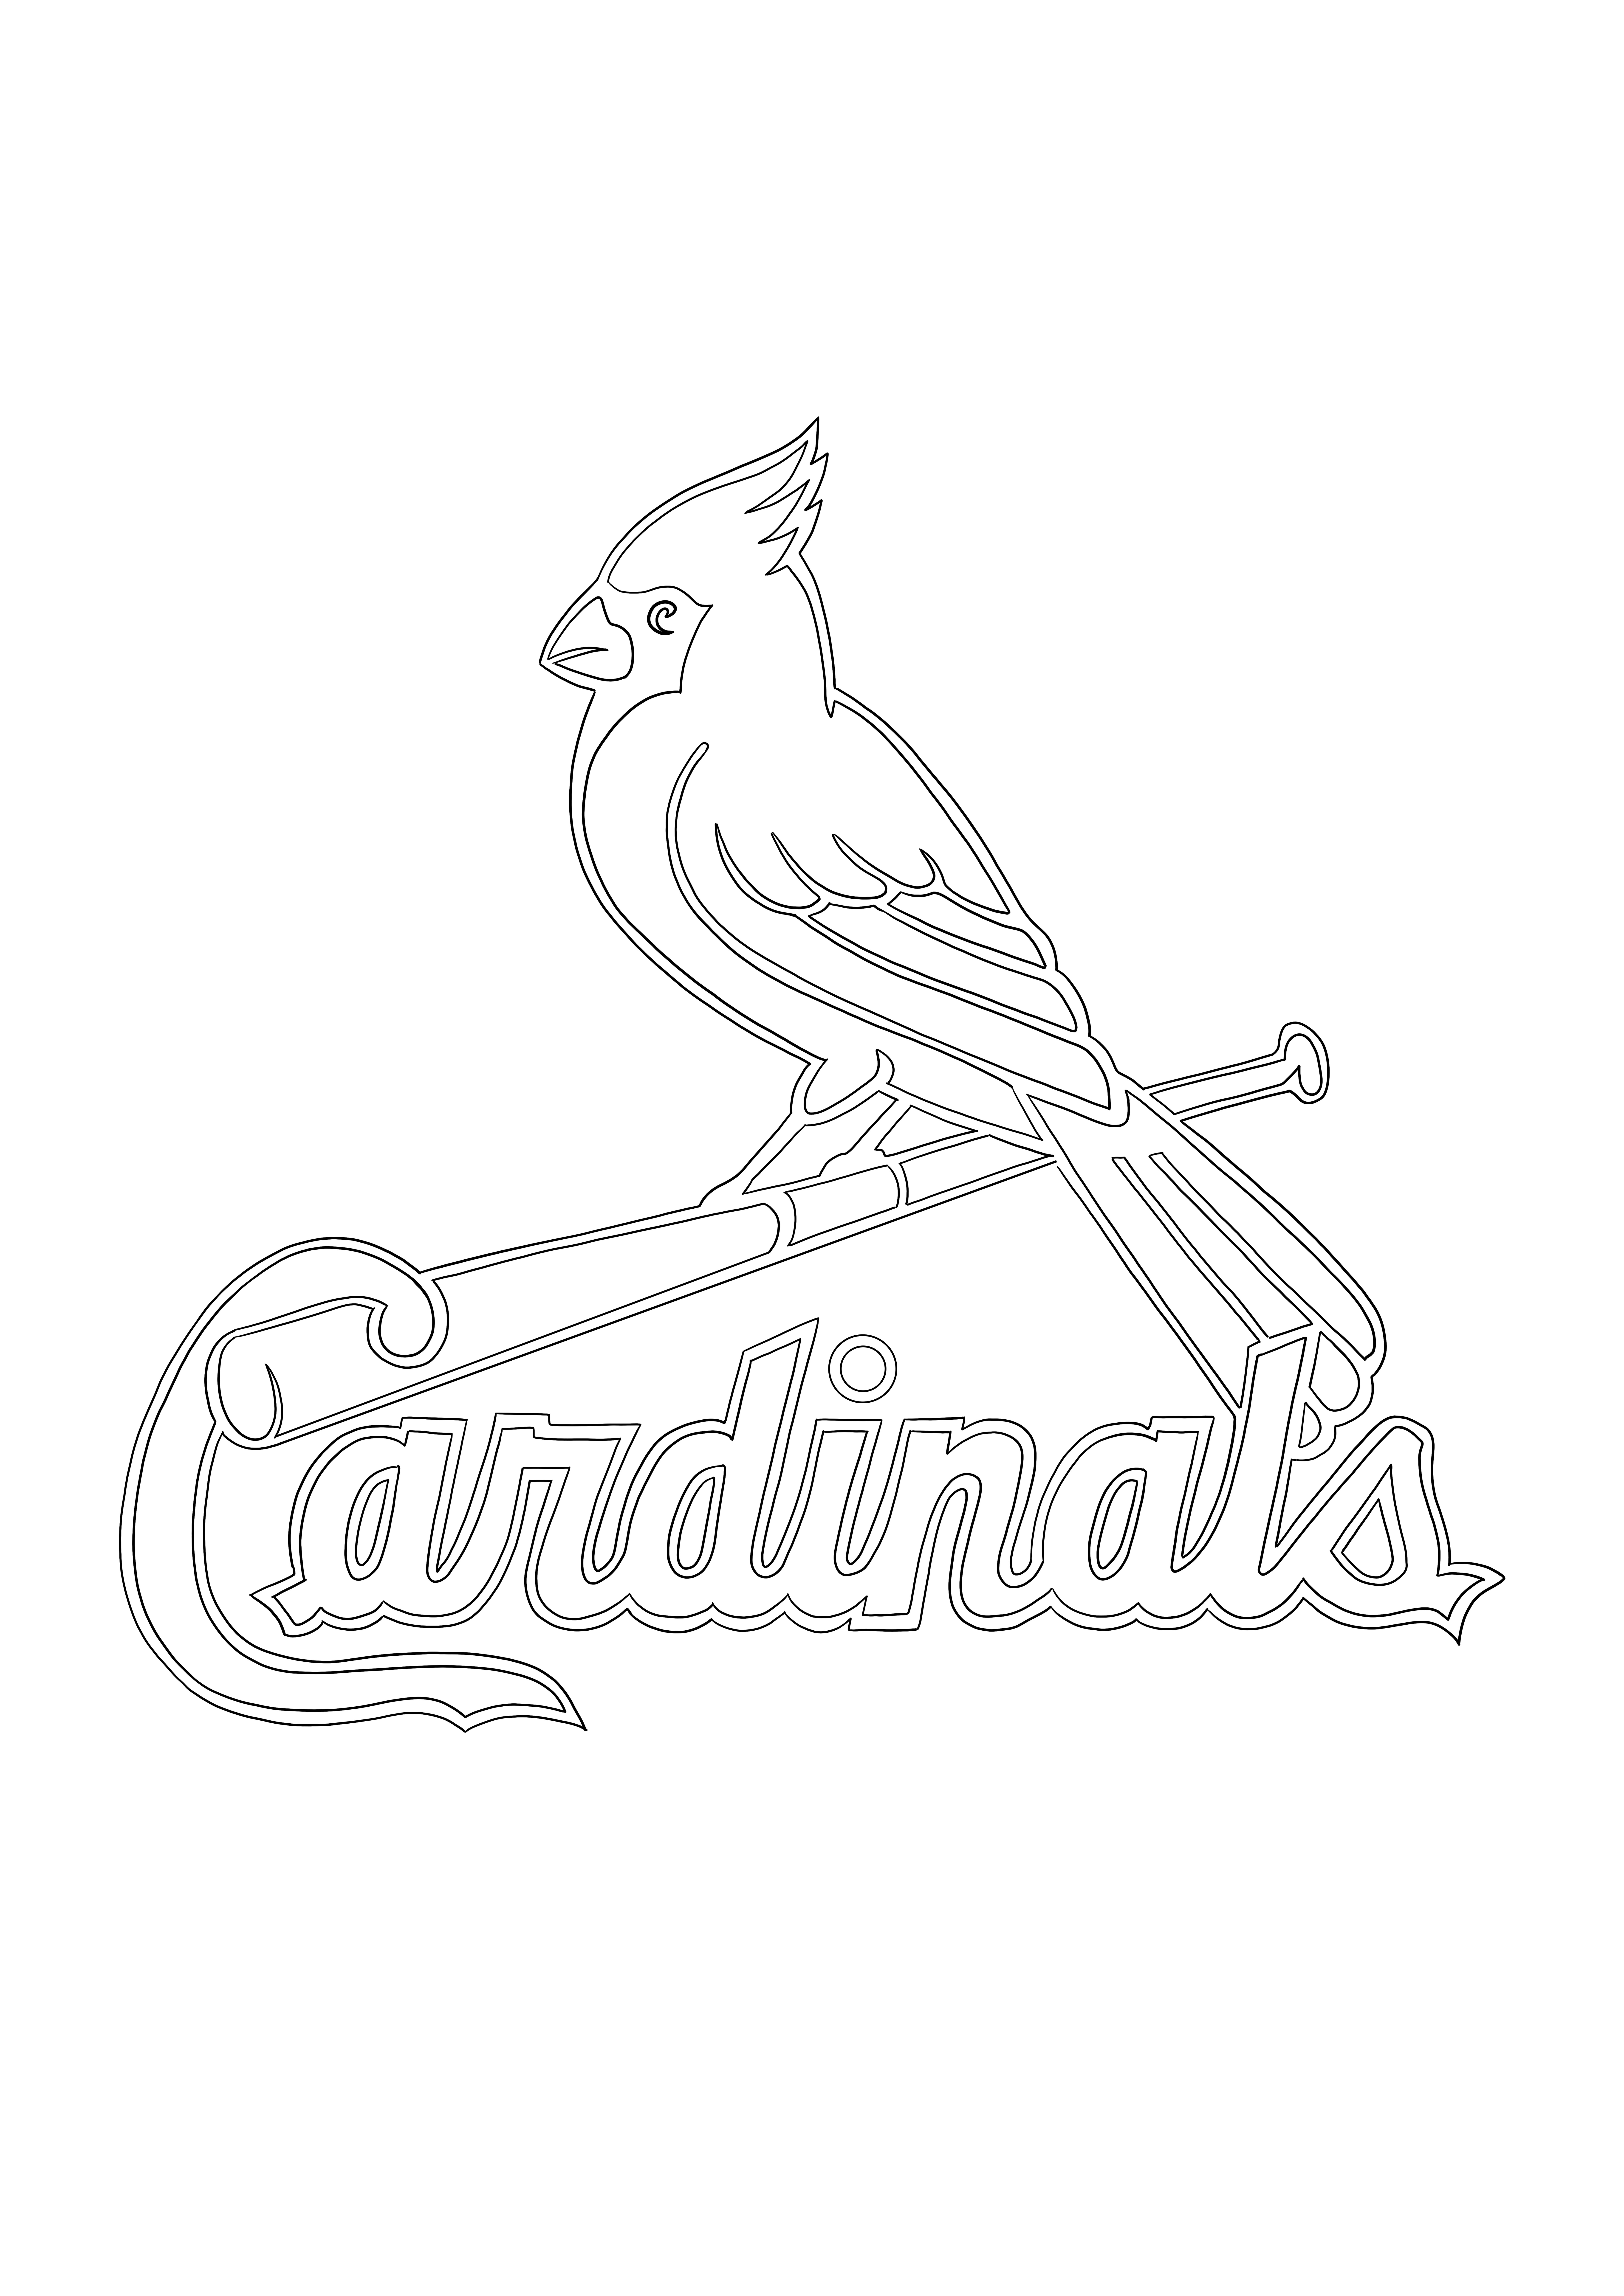 Logo St. Louis Cardinals da salvare per dopo o scaricare per colorare